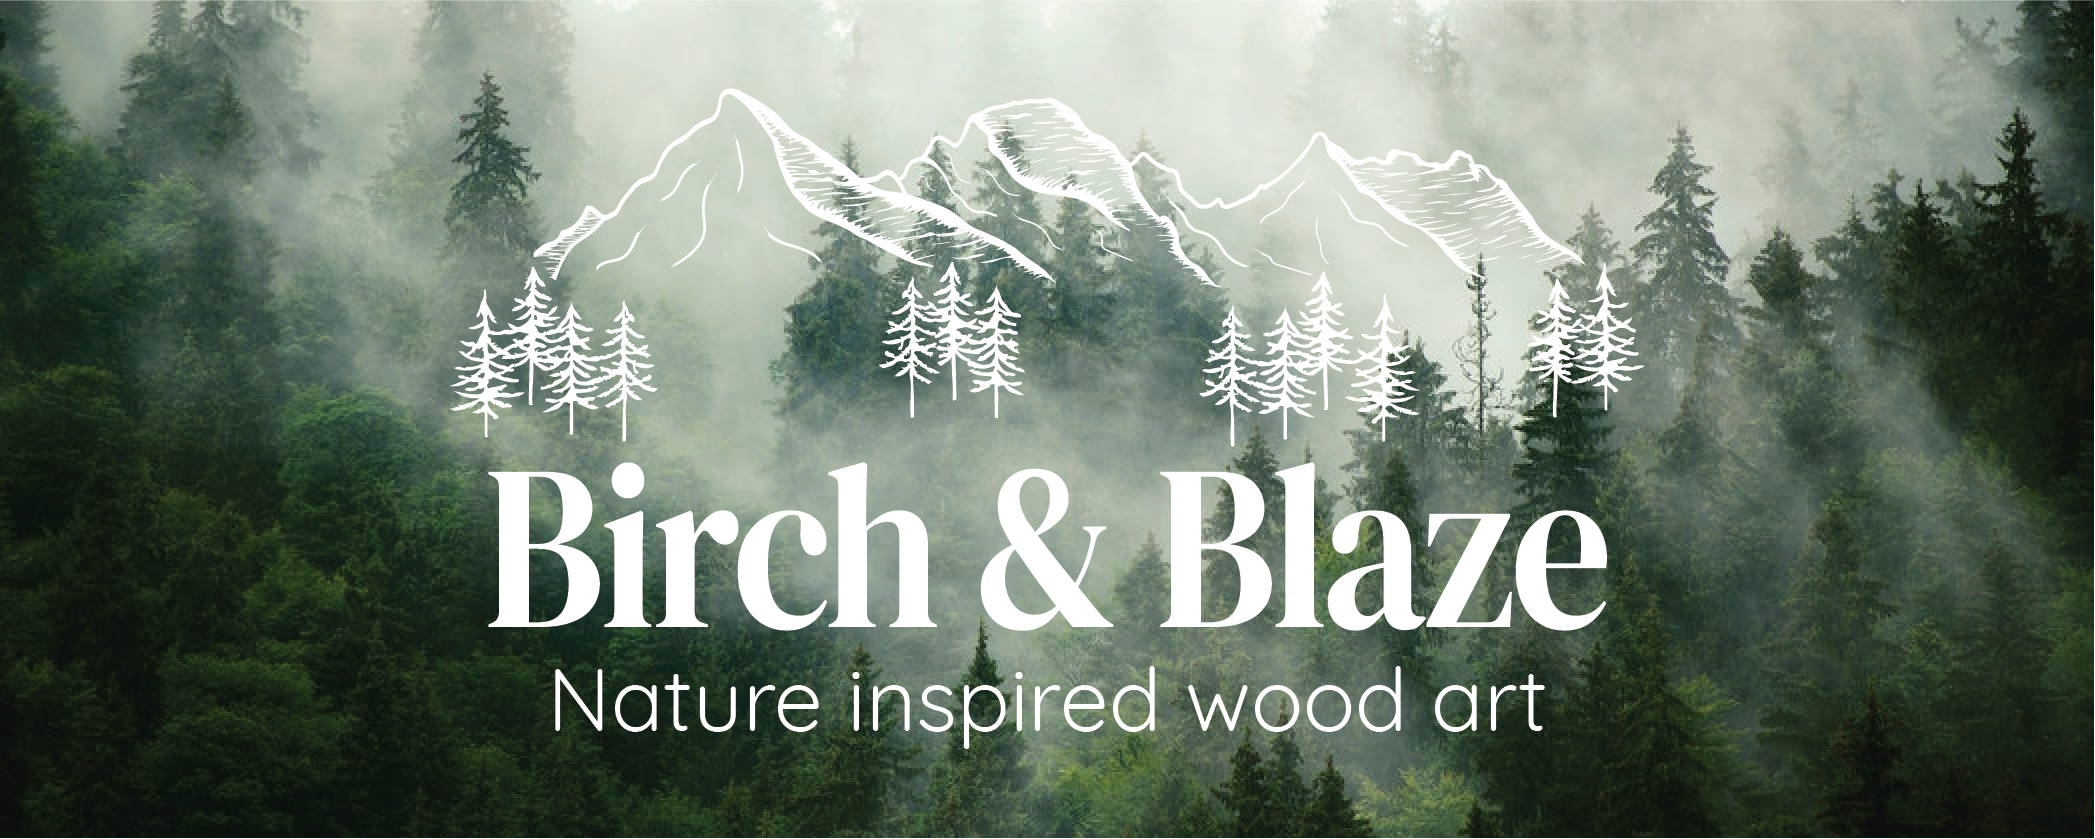 Website Header for Birch & Blaze